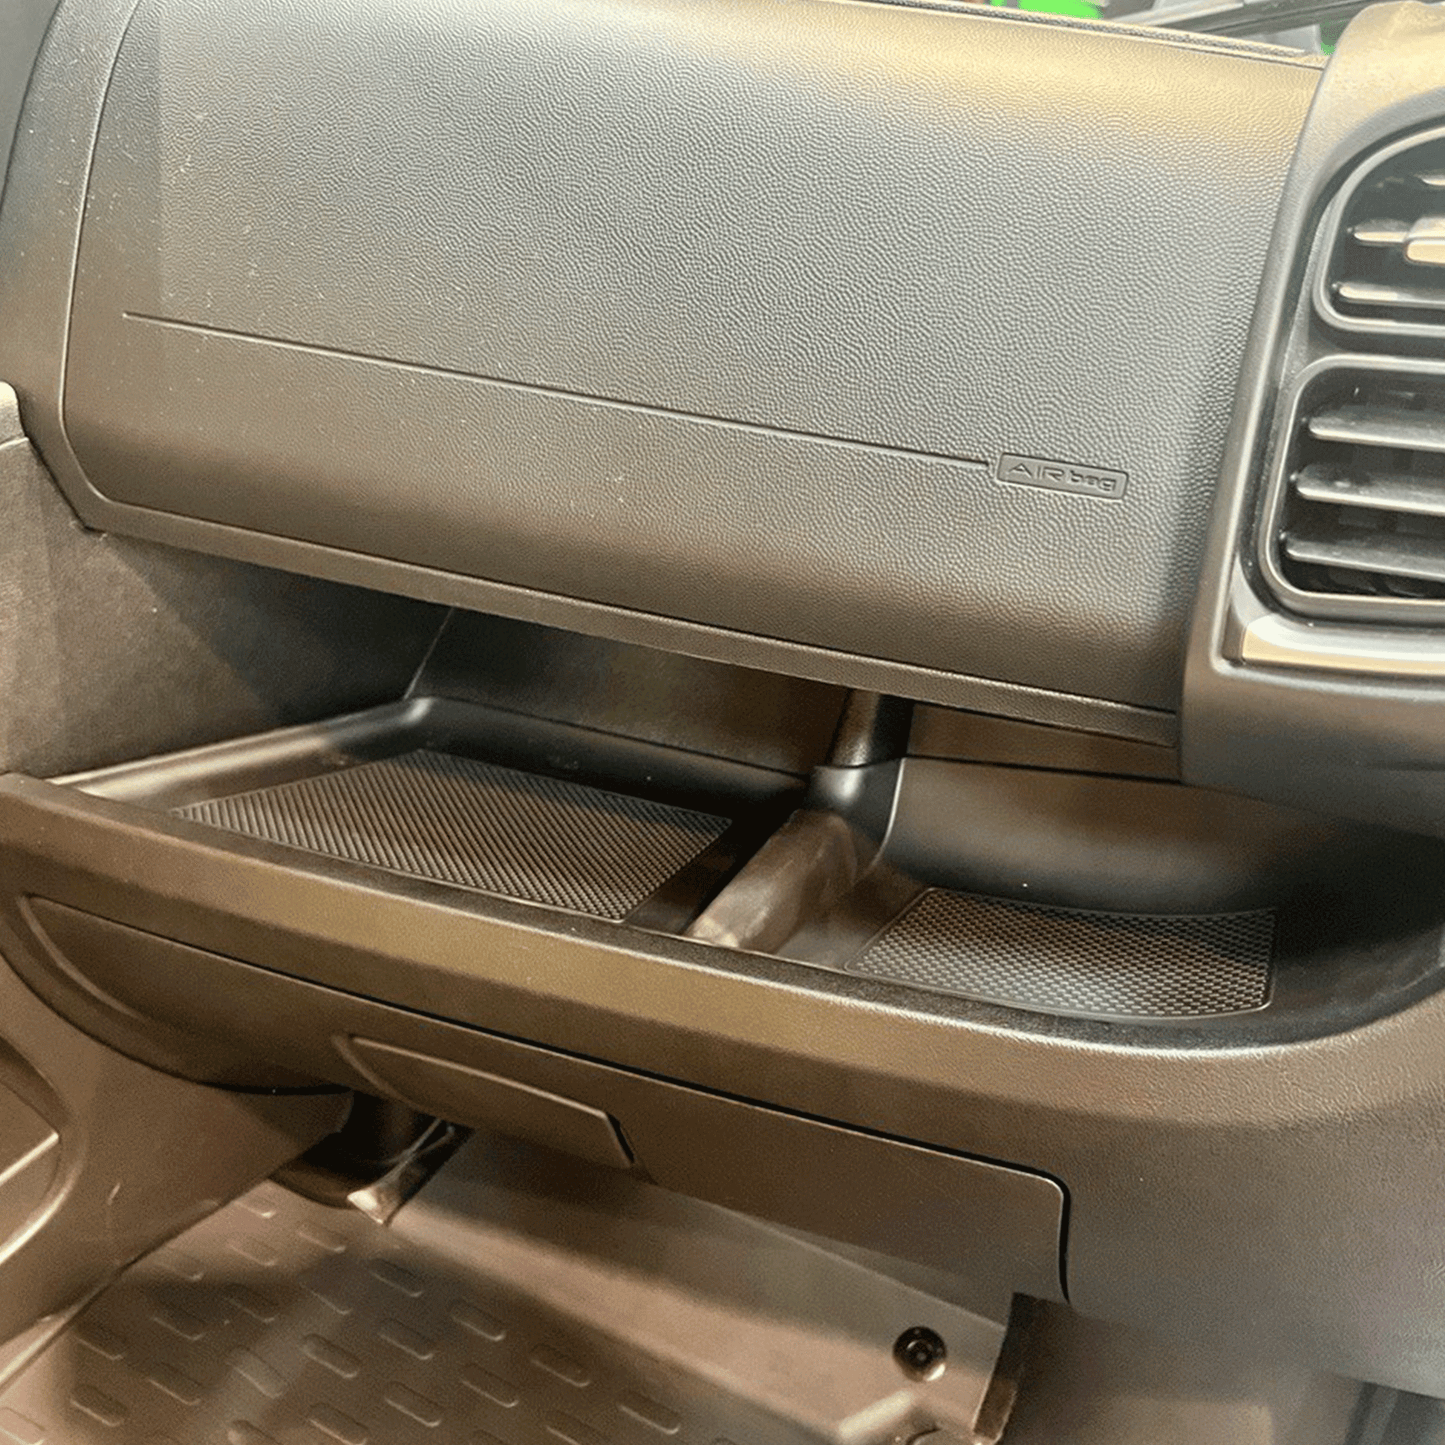 Camper autotrail Peugeot Boxer nuovo inserto in gomma/tappetino nero cruscotto LHD